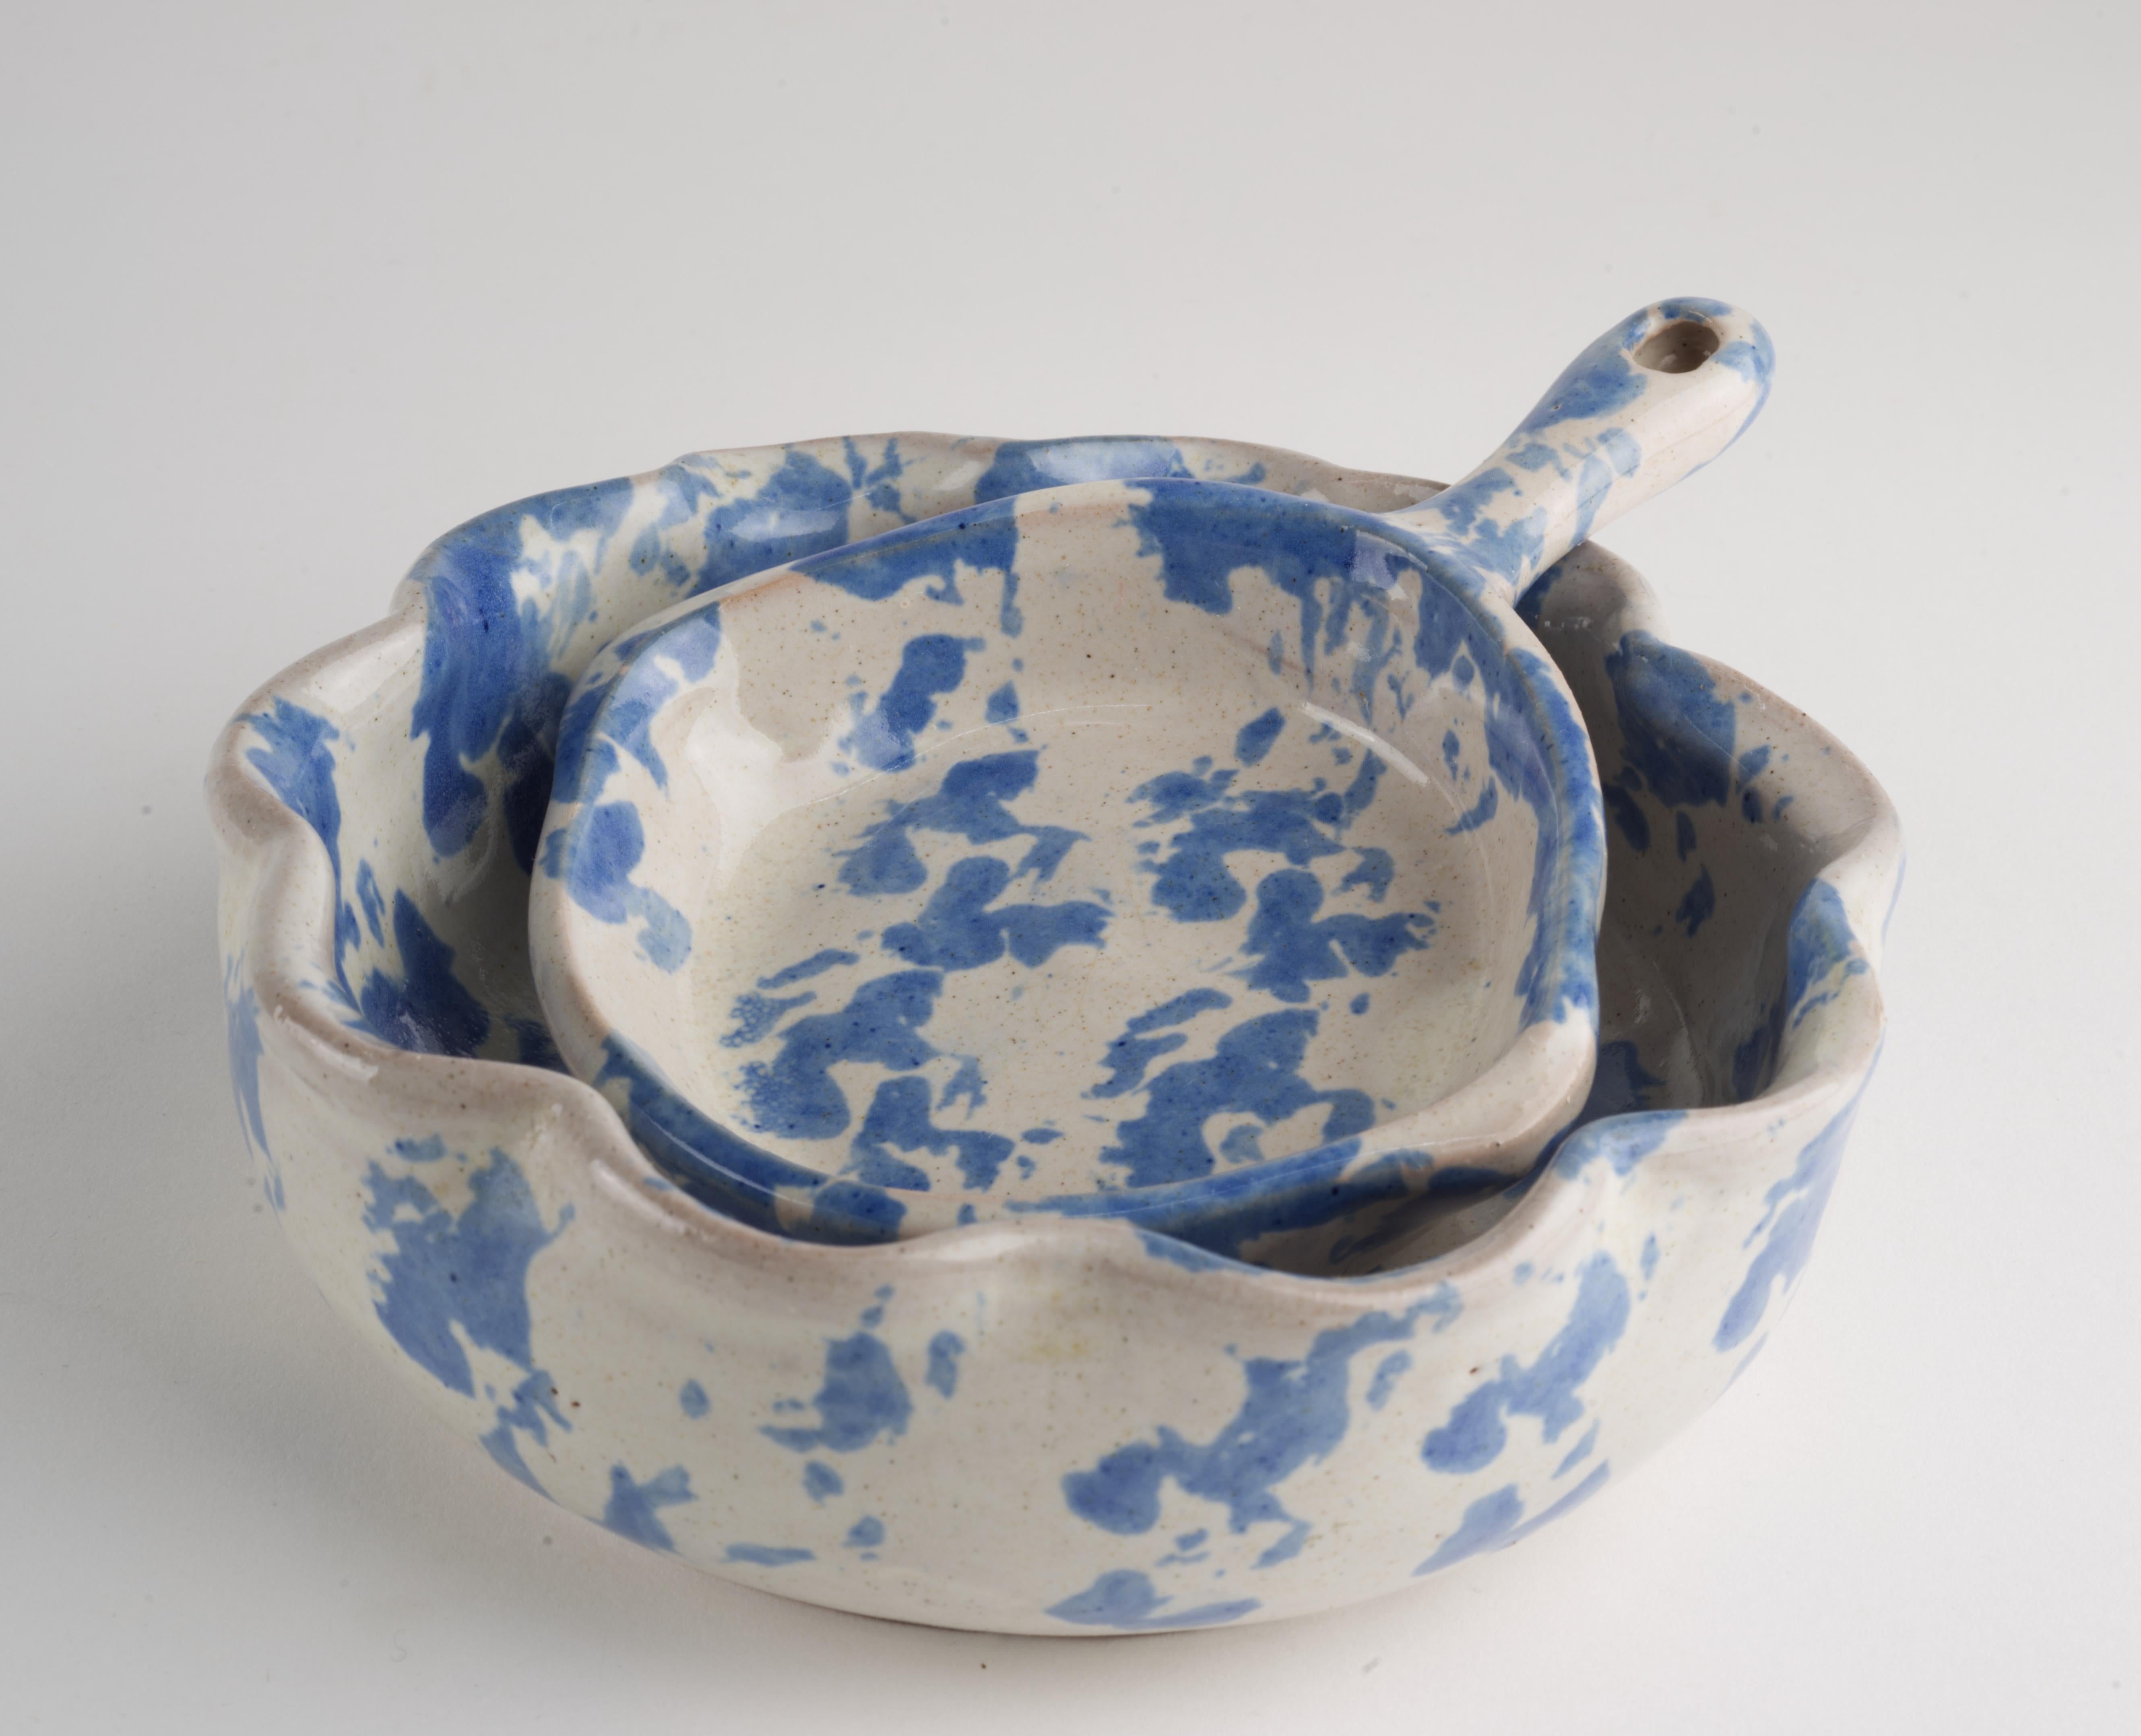  Das Set aus 2 Servierschalen wurde von Bybee Pottery handgefertigt und von Hand im Stil ihres Markenzeichens, der blauen Spongeware, dekoriert. Die kleine Gewürzschale hat die Form einer Pfanne, die Servierschale die traditionelle runde Form mit